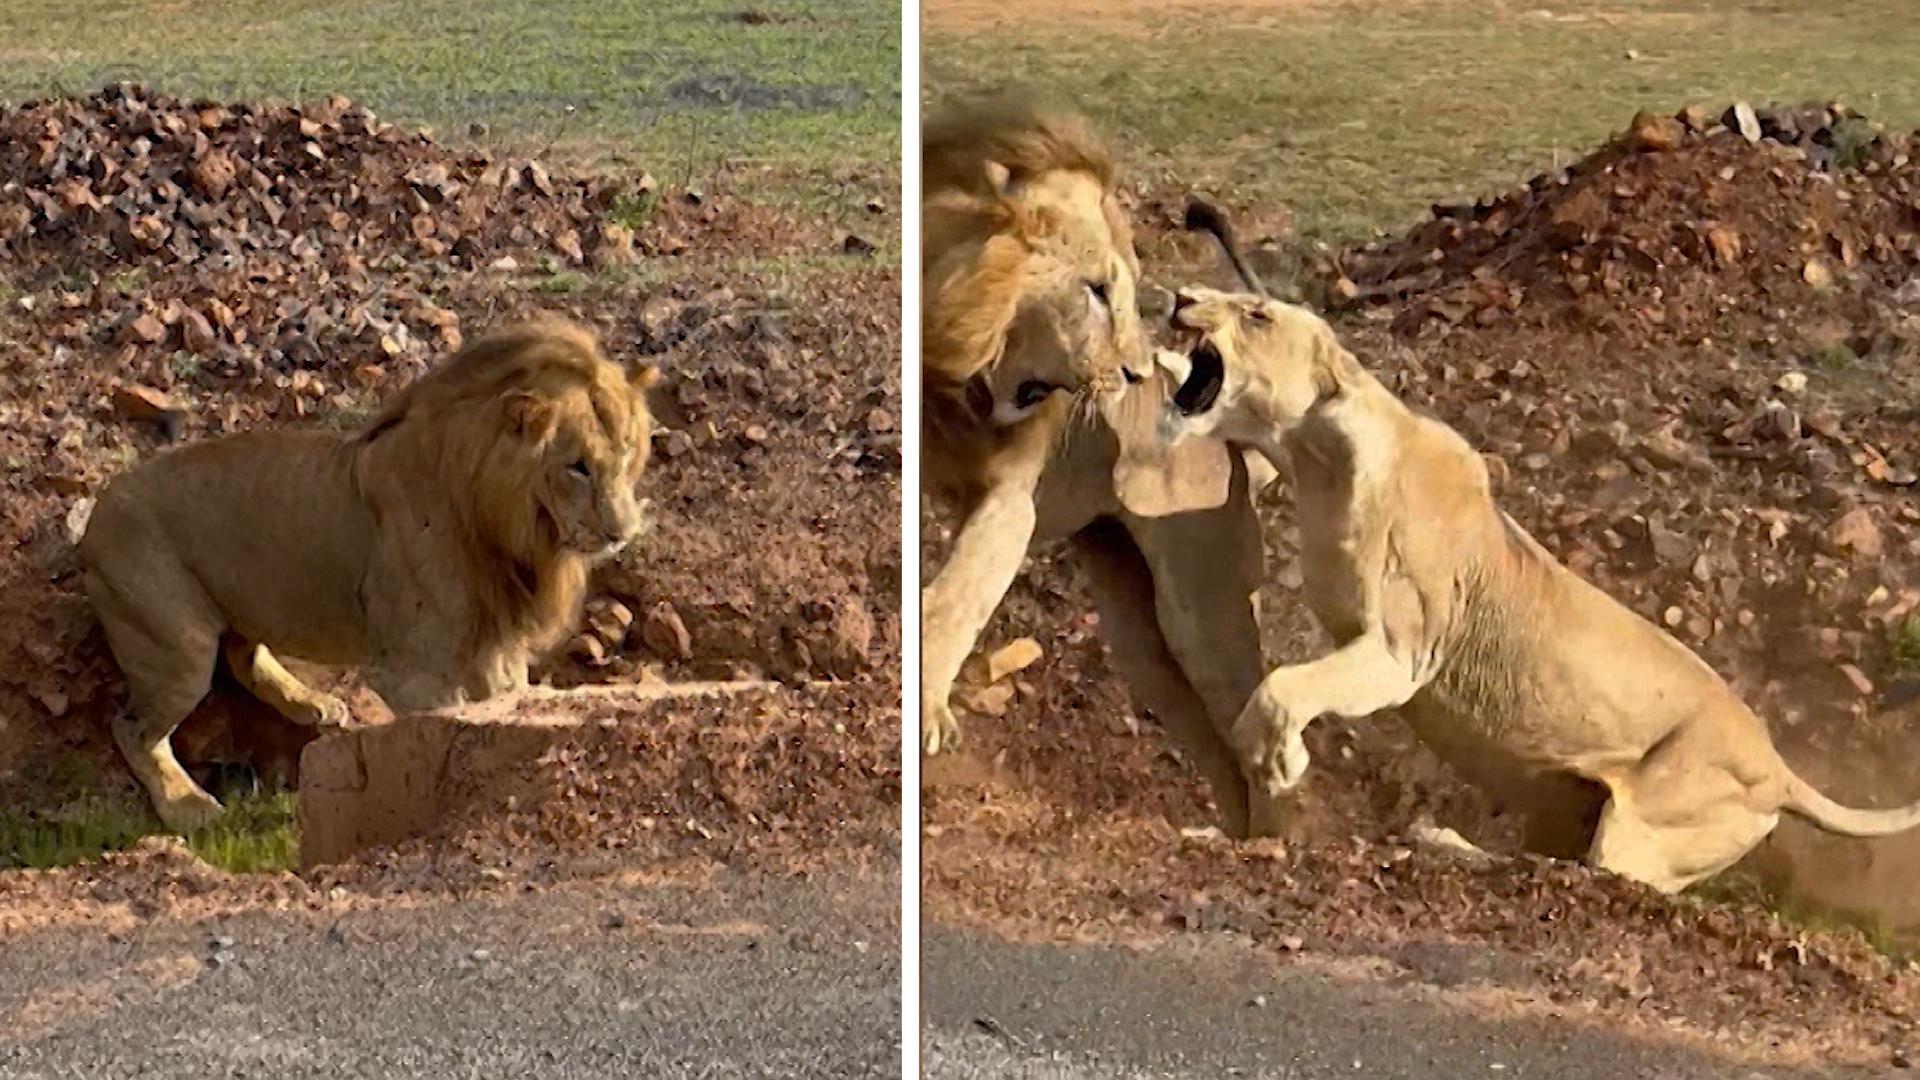 Krallen statt knallen: Löwe wird eiskalt abserviert Paaren kann er sich sparen!